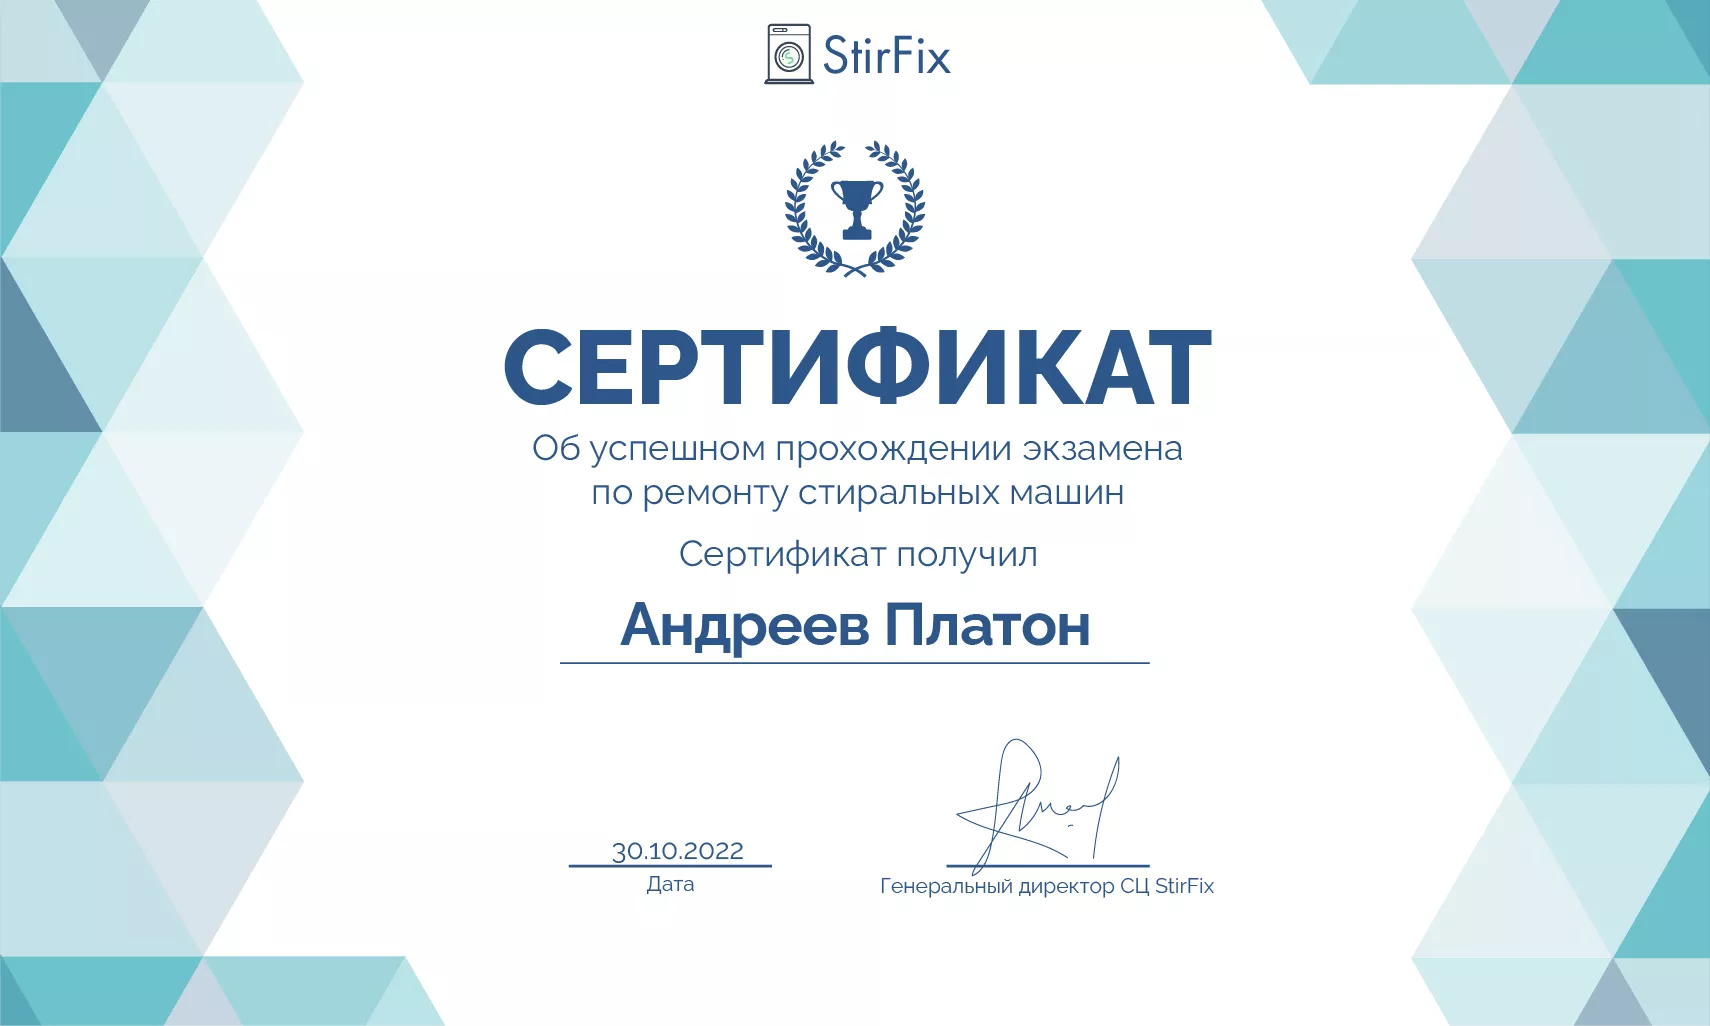 Андреев Платон сертификат мастера по ремонту стиральных машин